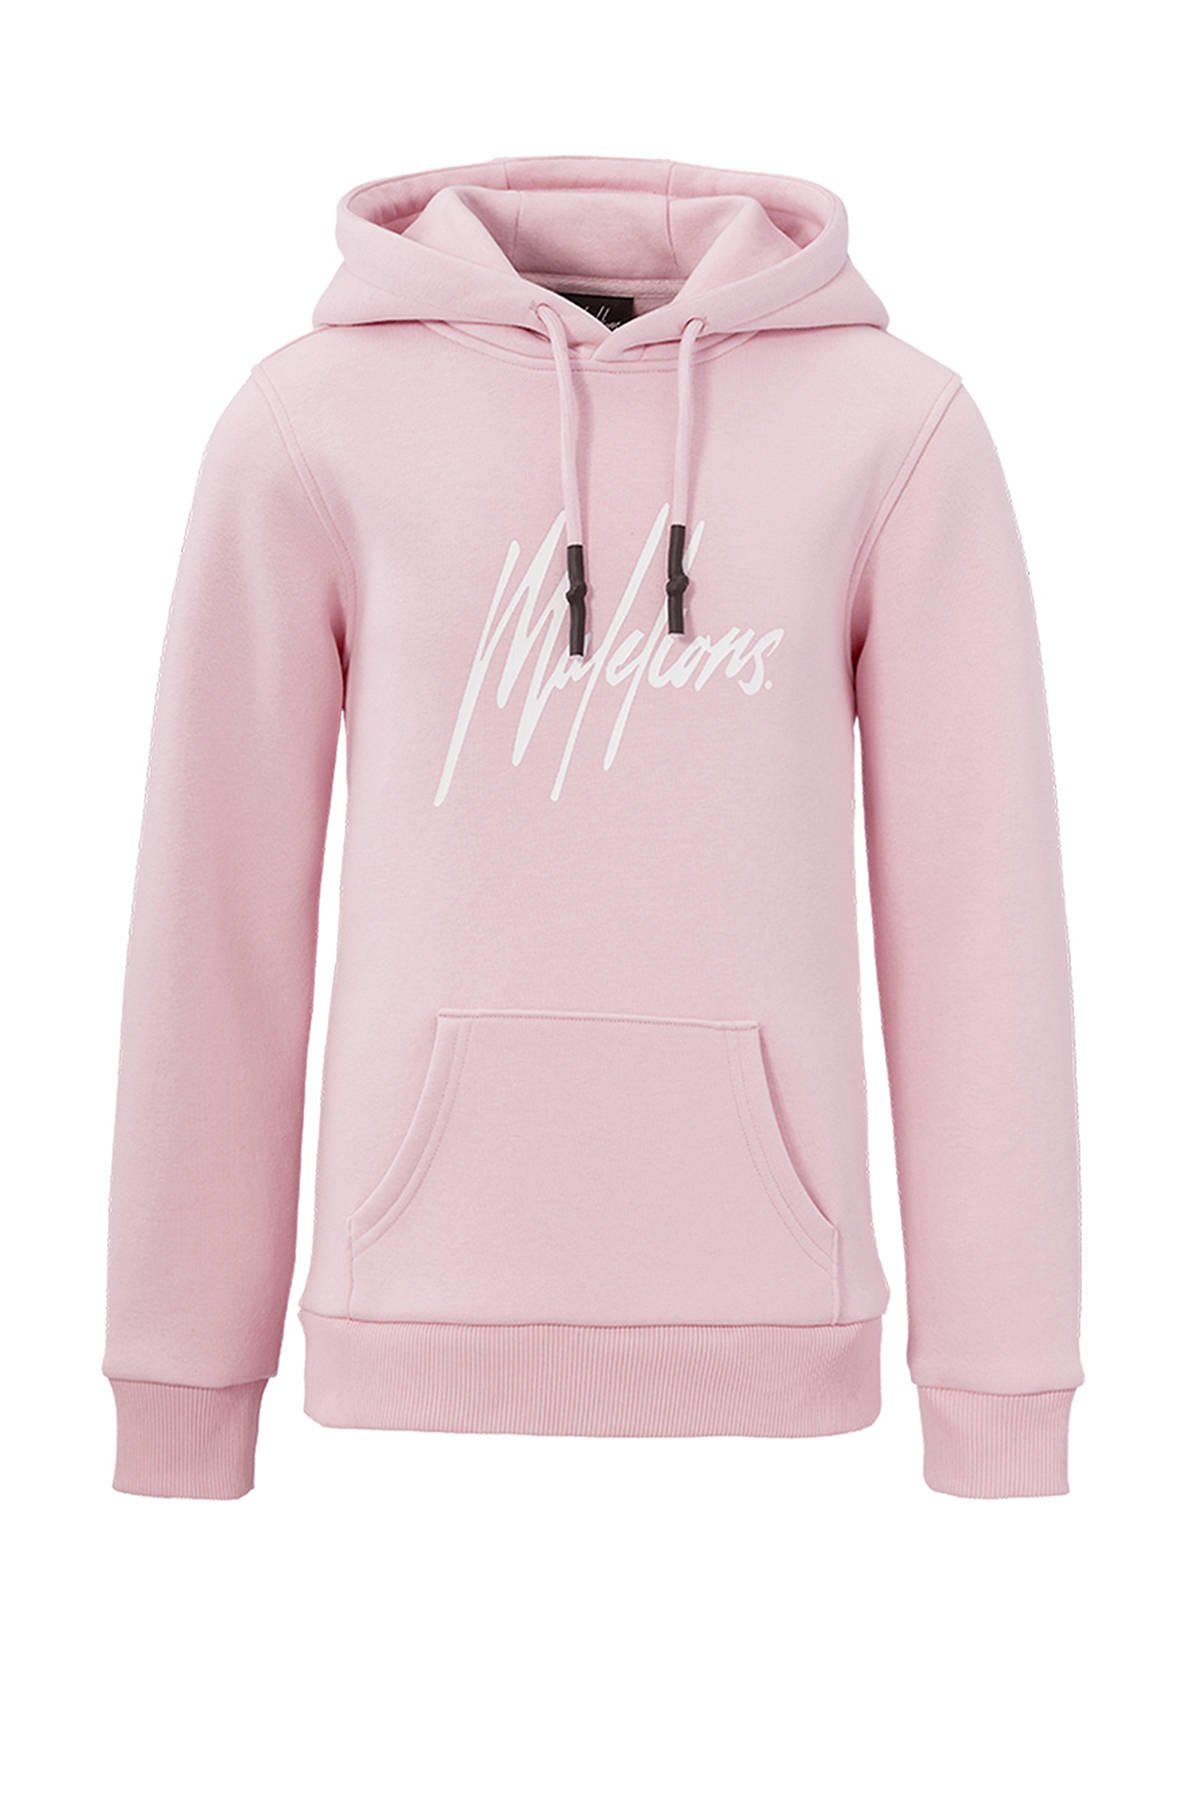 Moederland zakdoek schijf Malelions hoodie Signature met logo roze | wehkamp